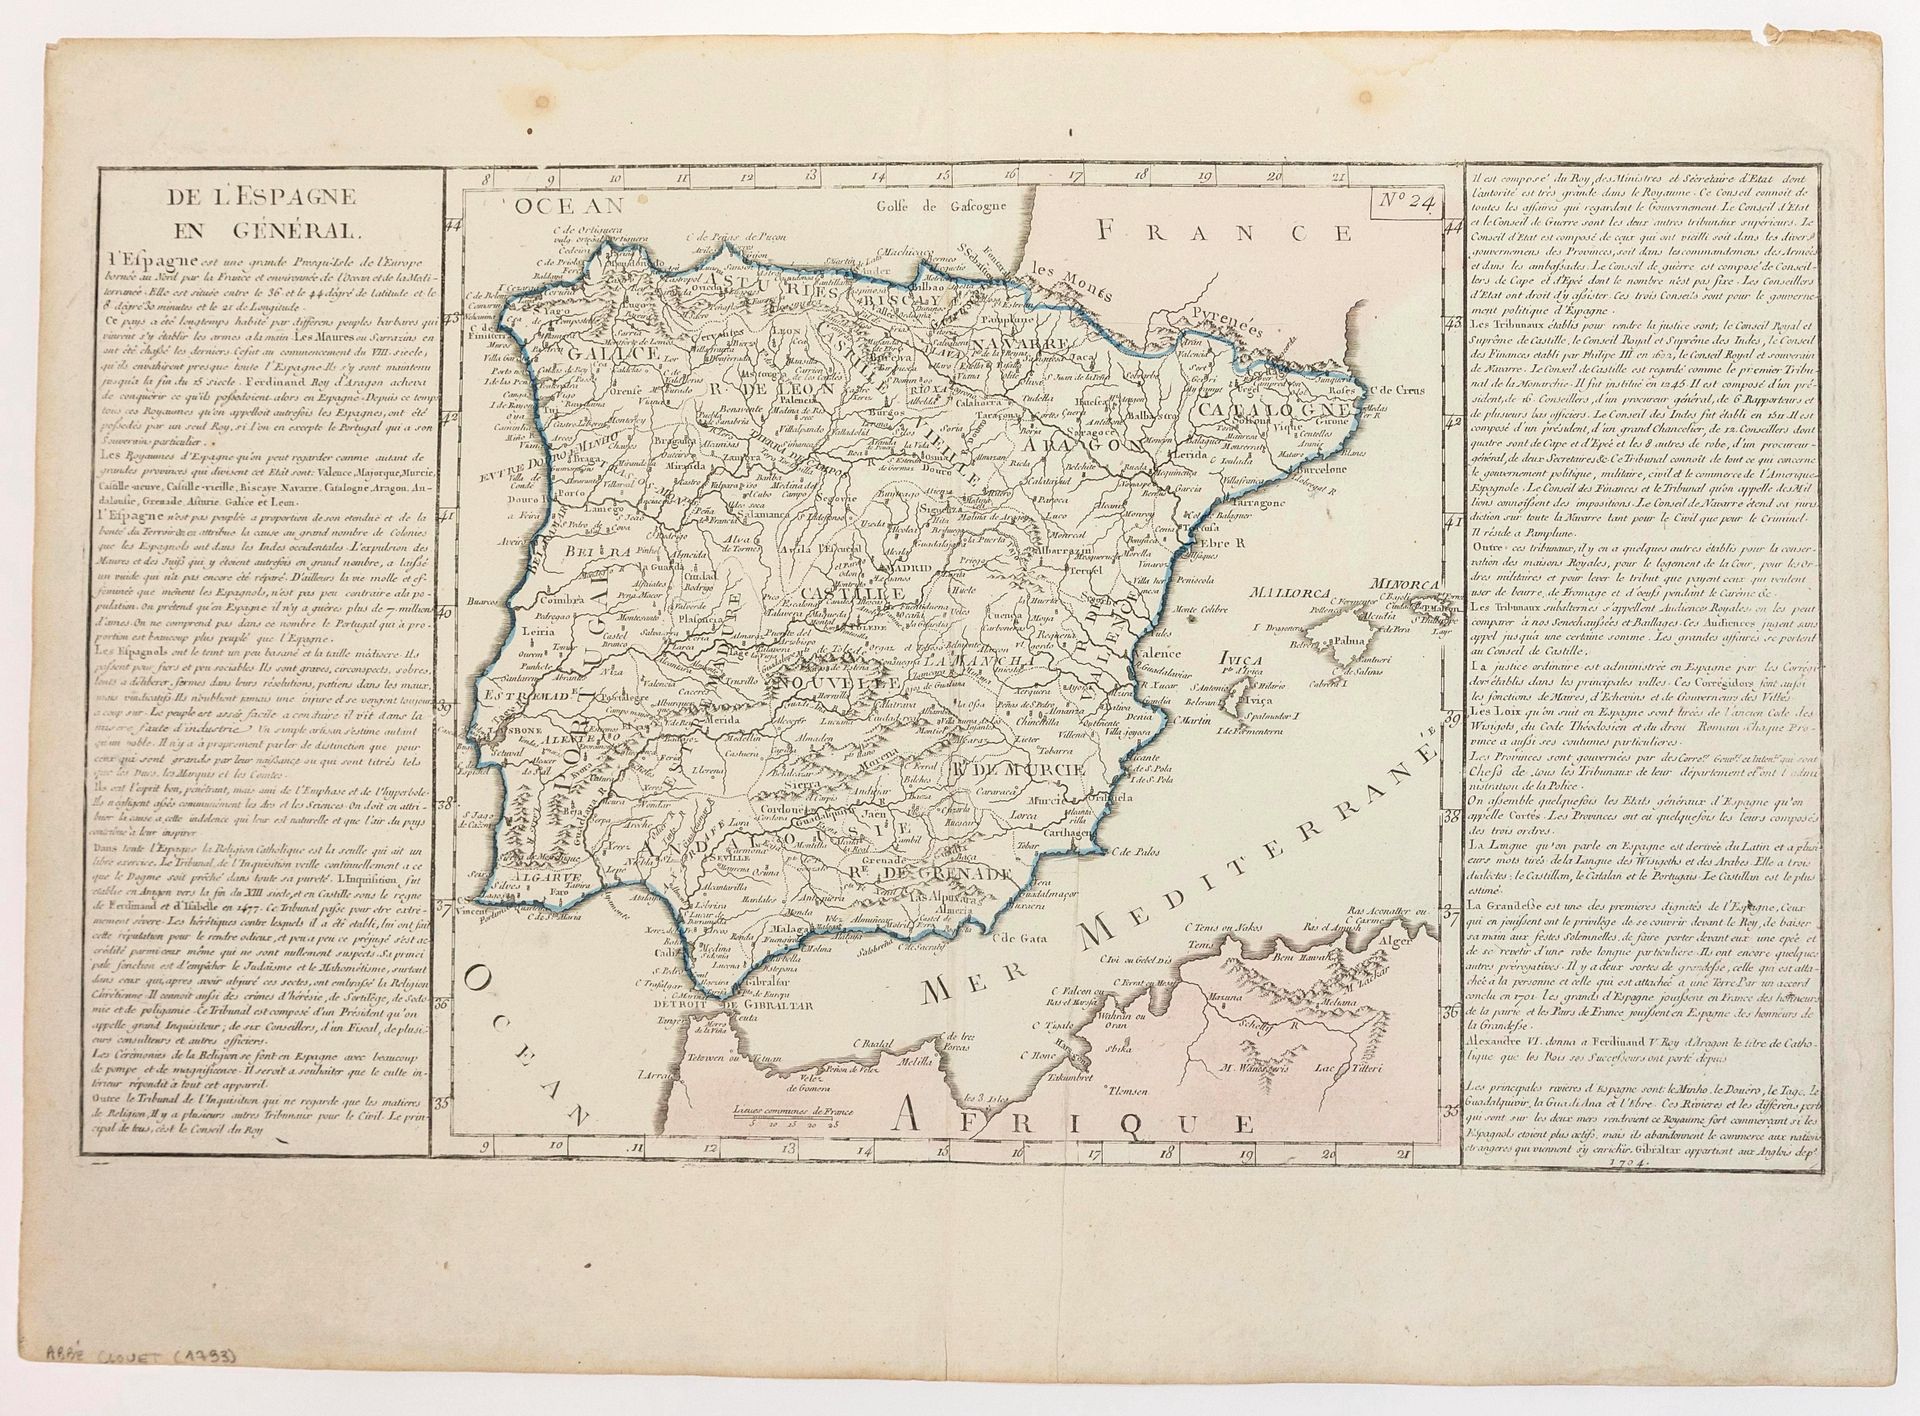 Null 11张西班牙和葡萄牙的地图。11张地理图的图版。总体状况良好："De l'ESPAGNE en général" (Abbé Clouet 1793)&hellip;